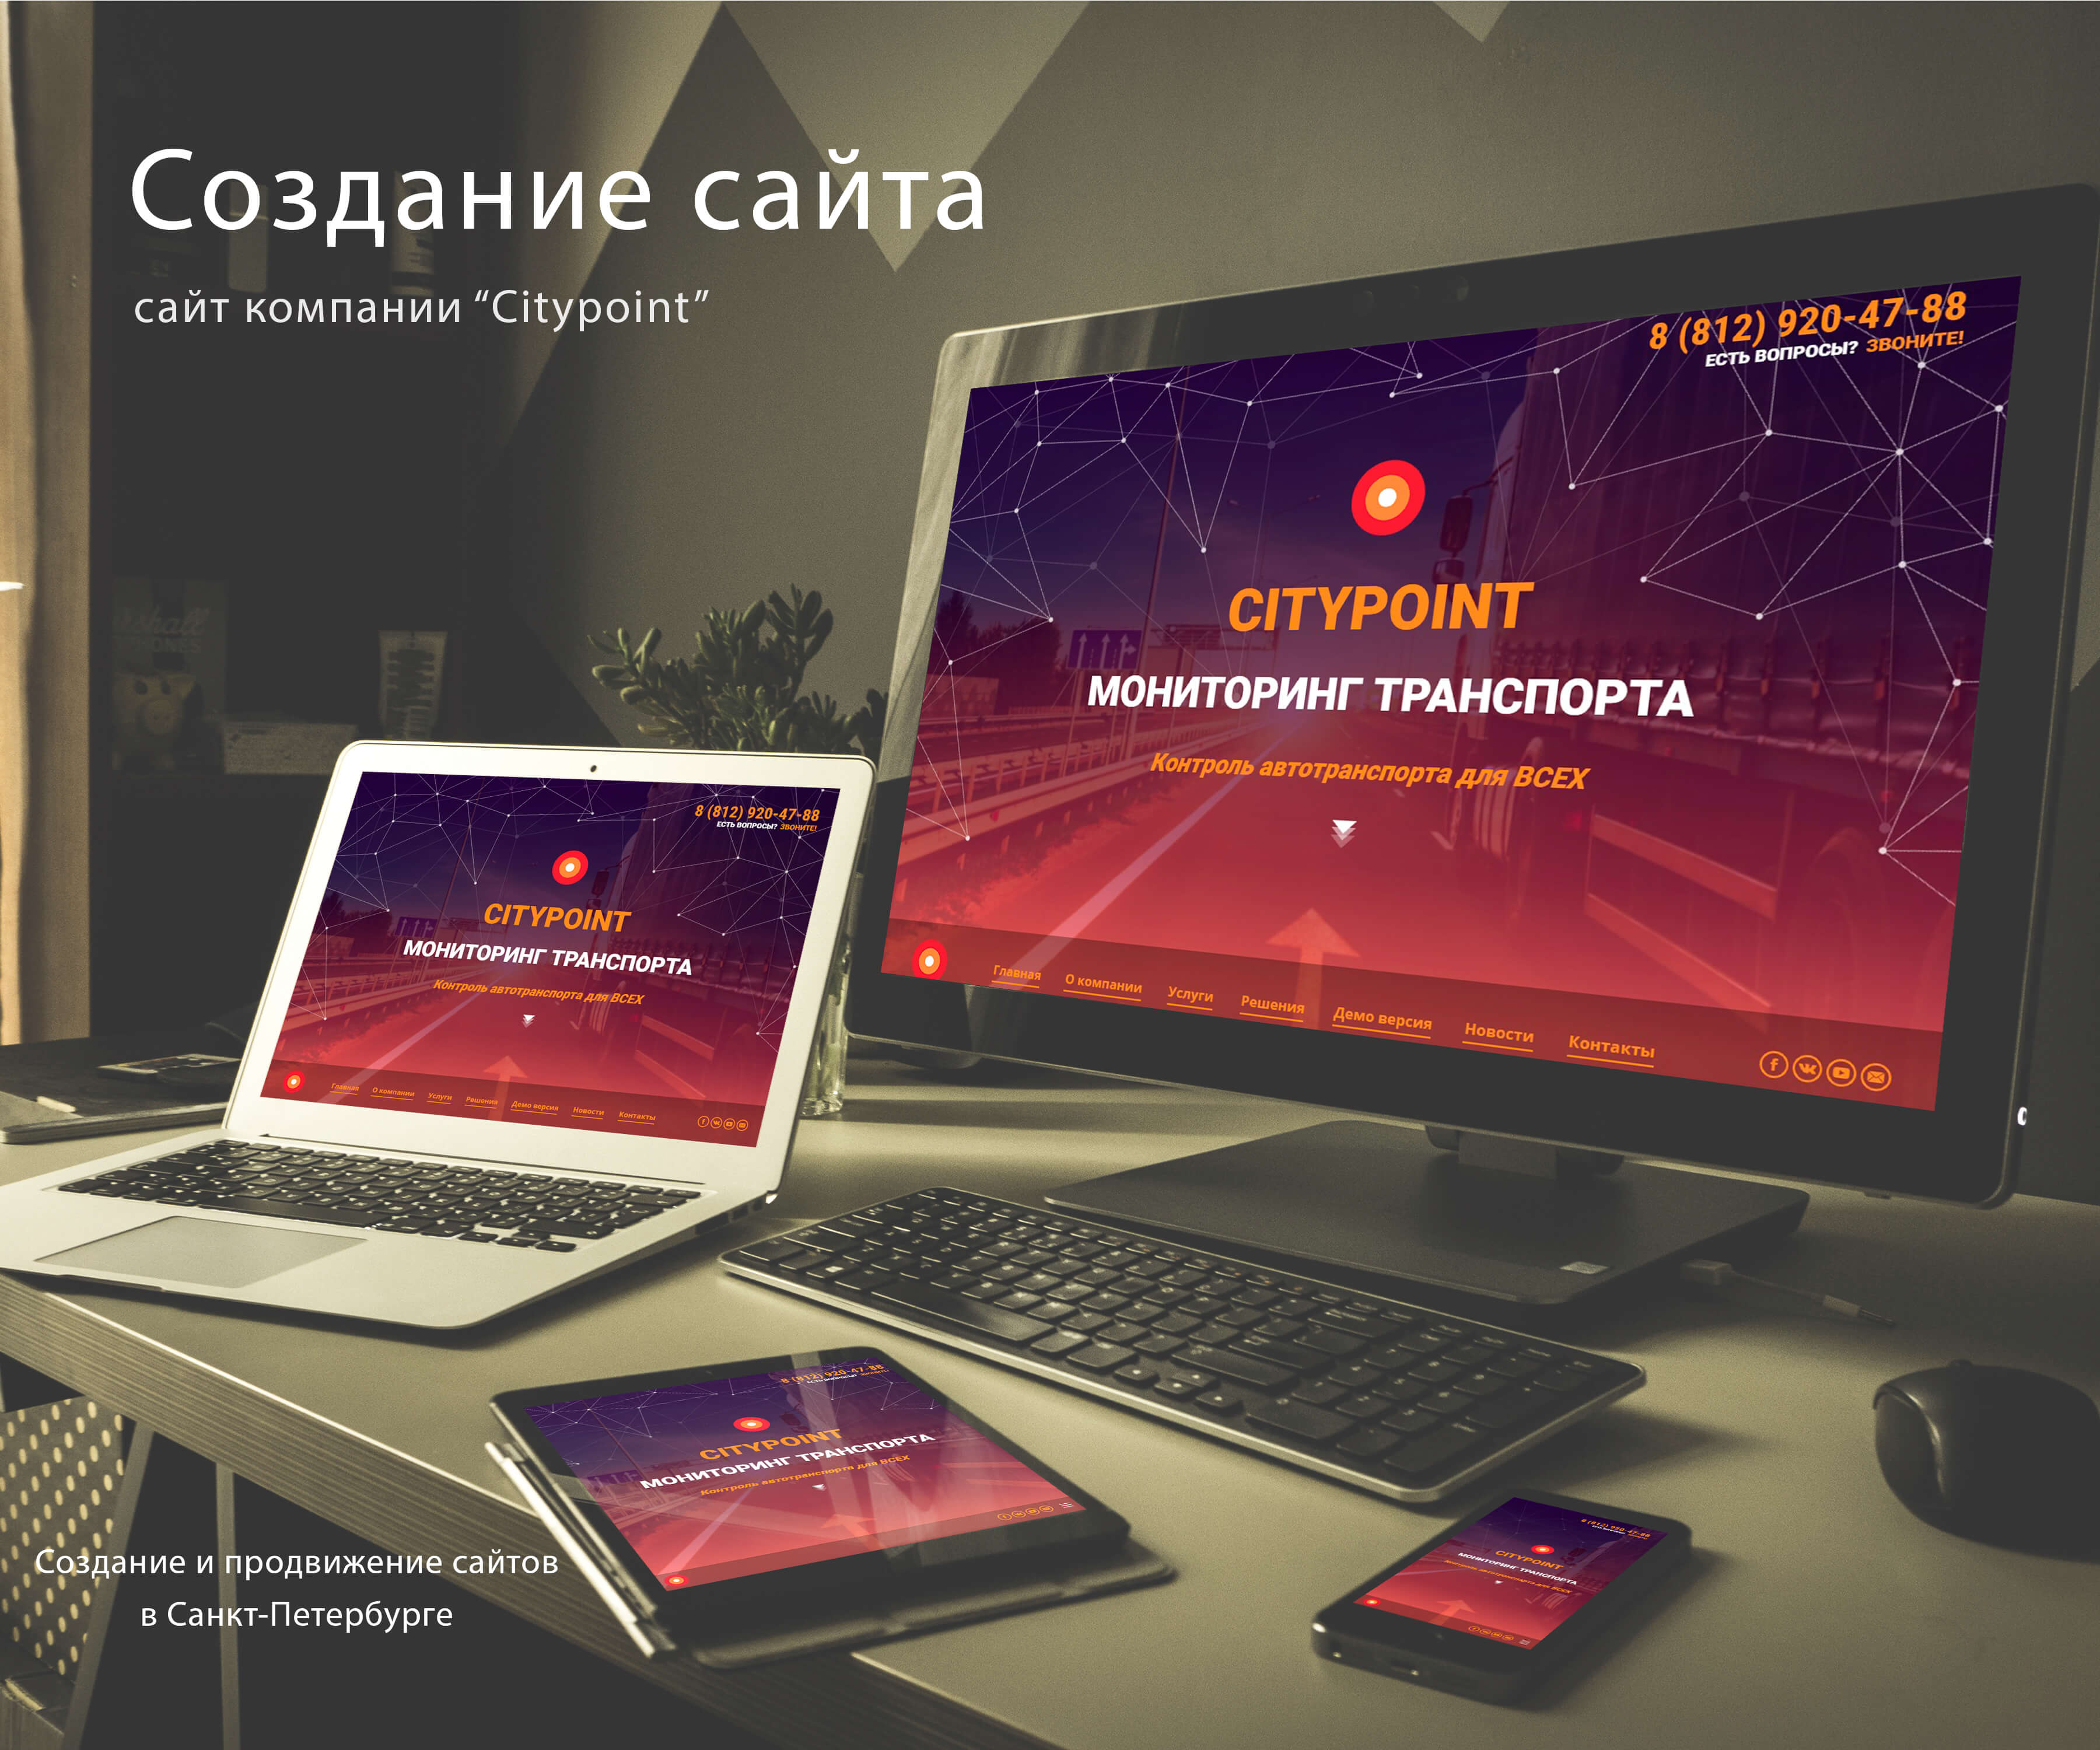 Разработка веб сайта в москве хорошему